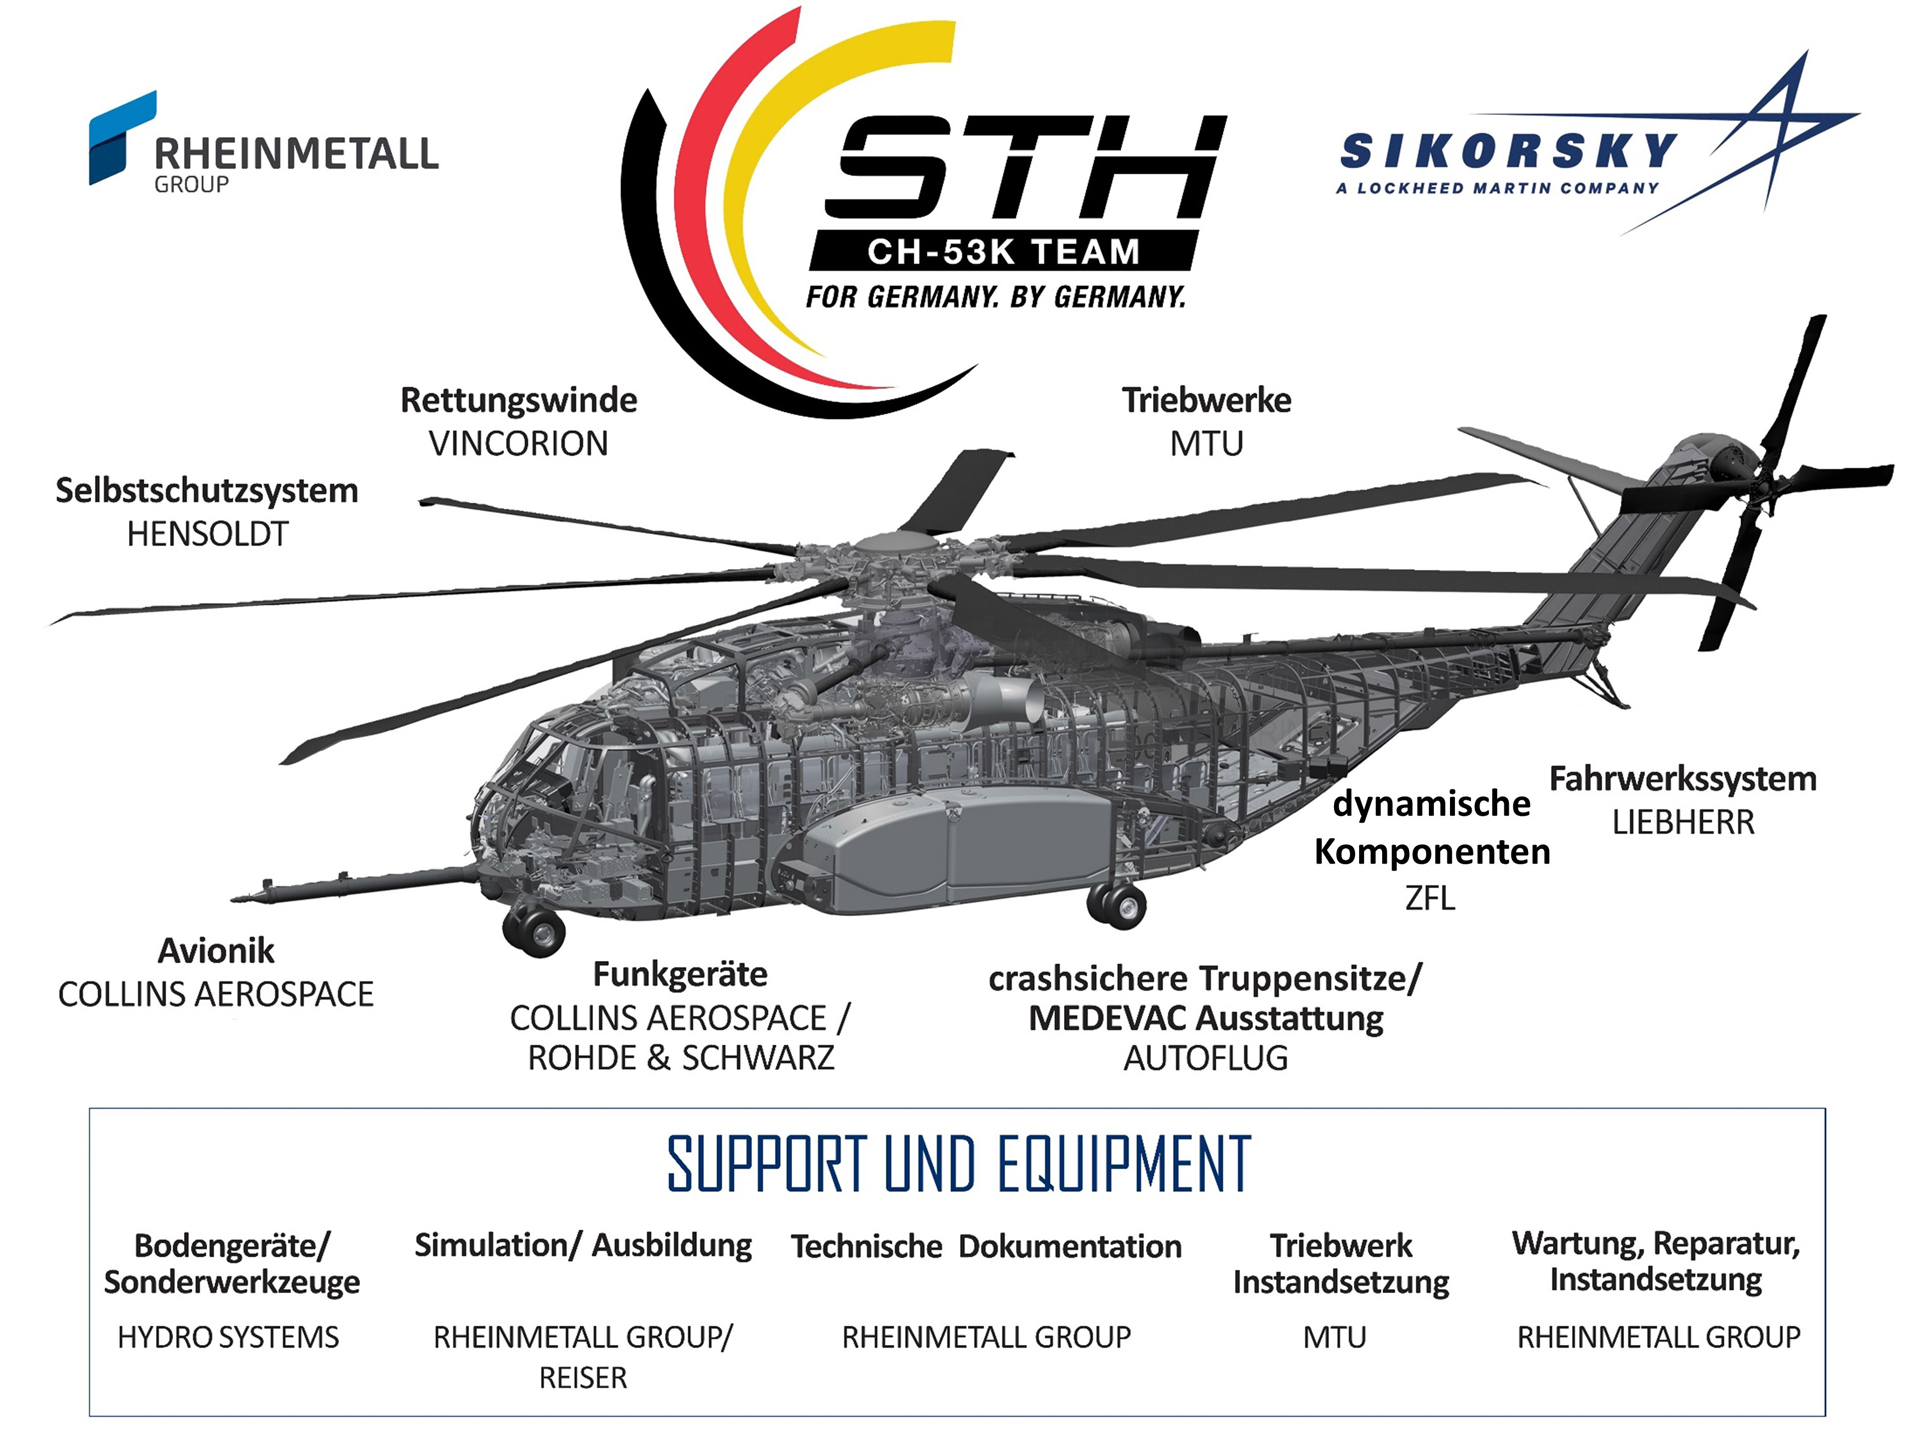 Dieses transatlantische Industrie-Team wird die wird benötigte Unterstützung der bestehenden CH-53G Flotte bereitstellen und steht gleichzeitig dafür zur Verfügung, die Luftwaffe während der Einführung und dem Übergang zur nächsten Generation von schweren Transporthubschraubern zu unterstützen.